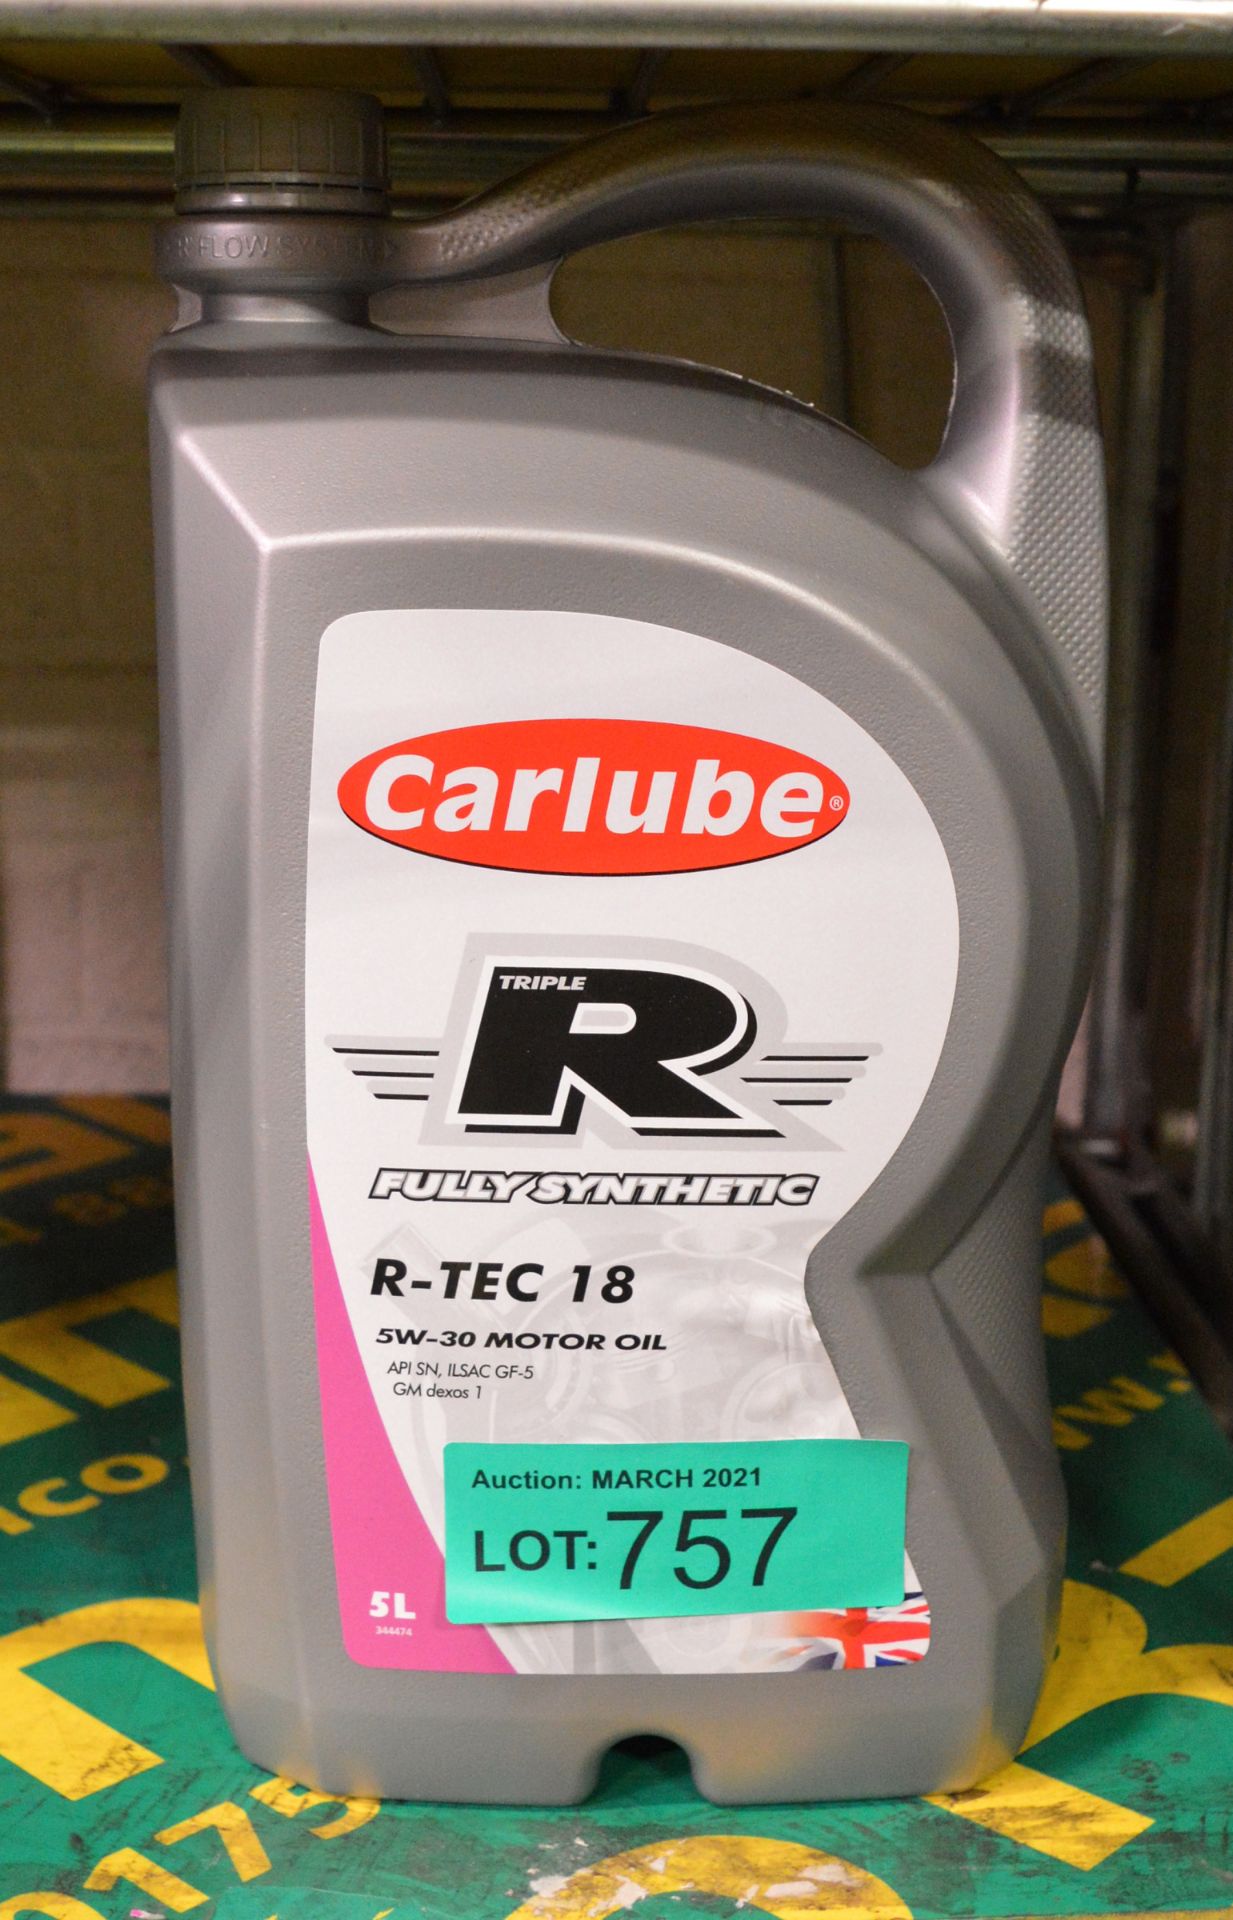 Carlube Triple R fully synthetic - 5W-30 motor oil - R-TEC 18 - 5LTR bottle